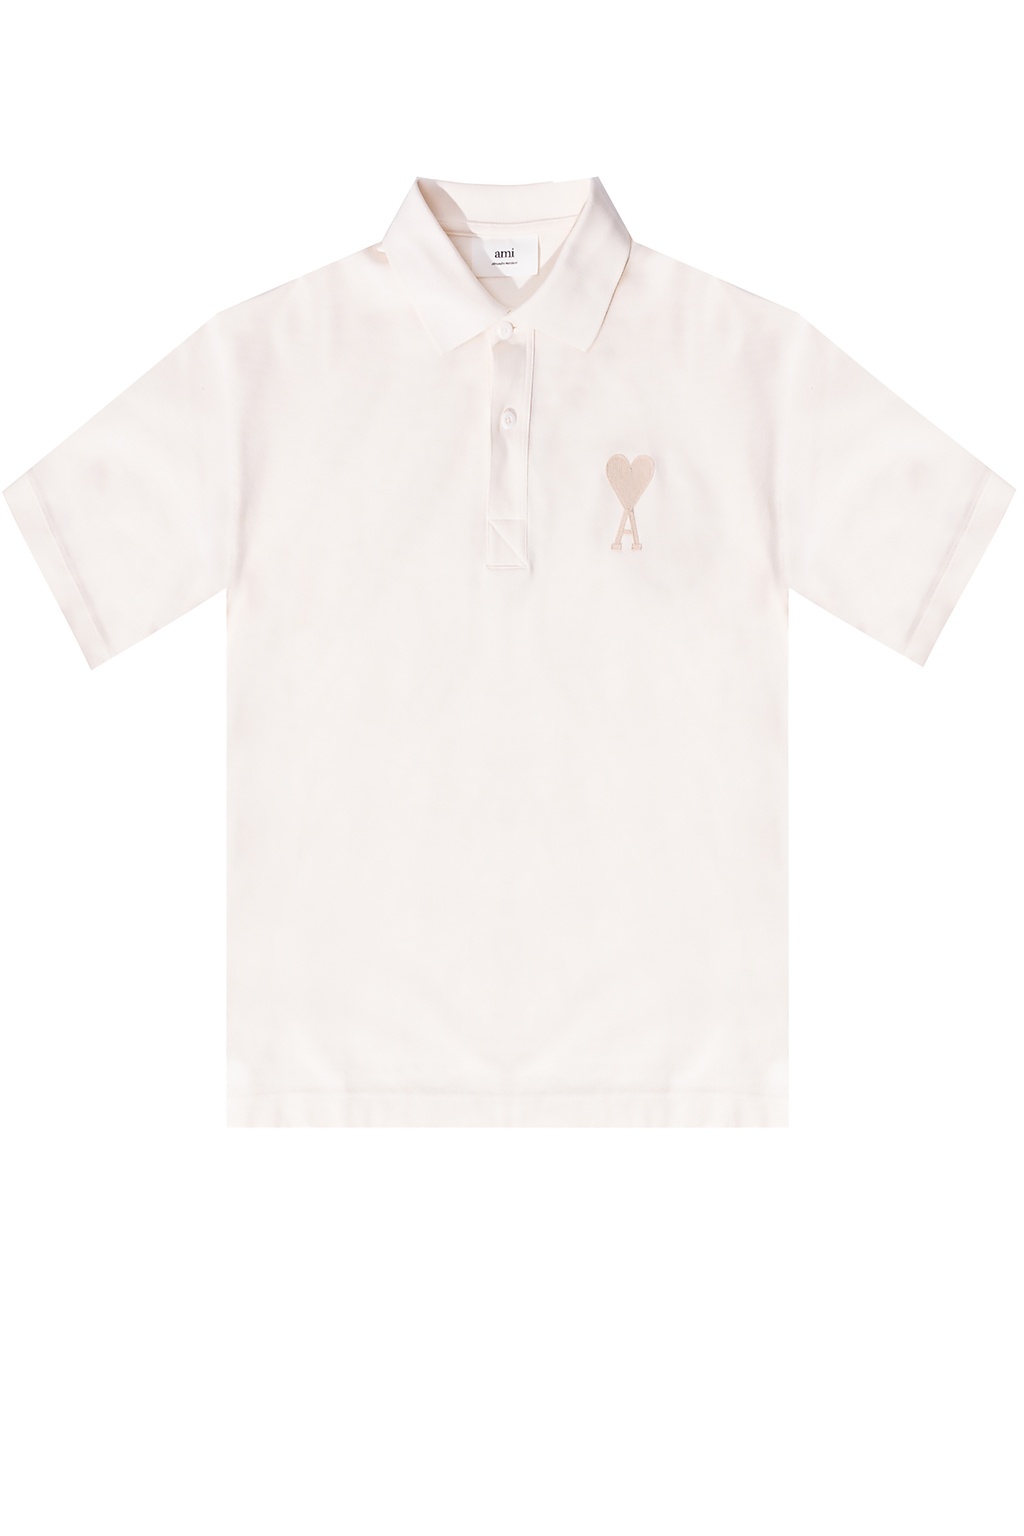 Louis Vuitton Classic Short Sleeve Pique Polo - Vitkac shop online